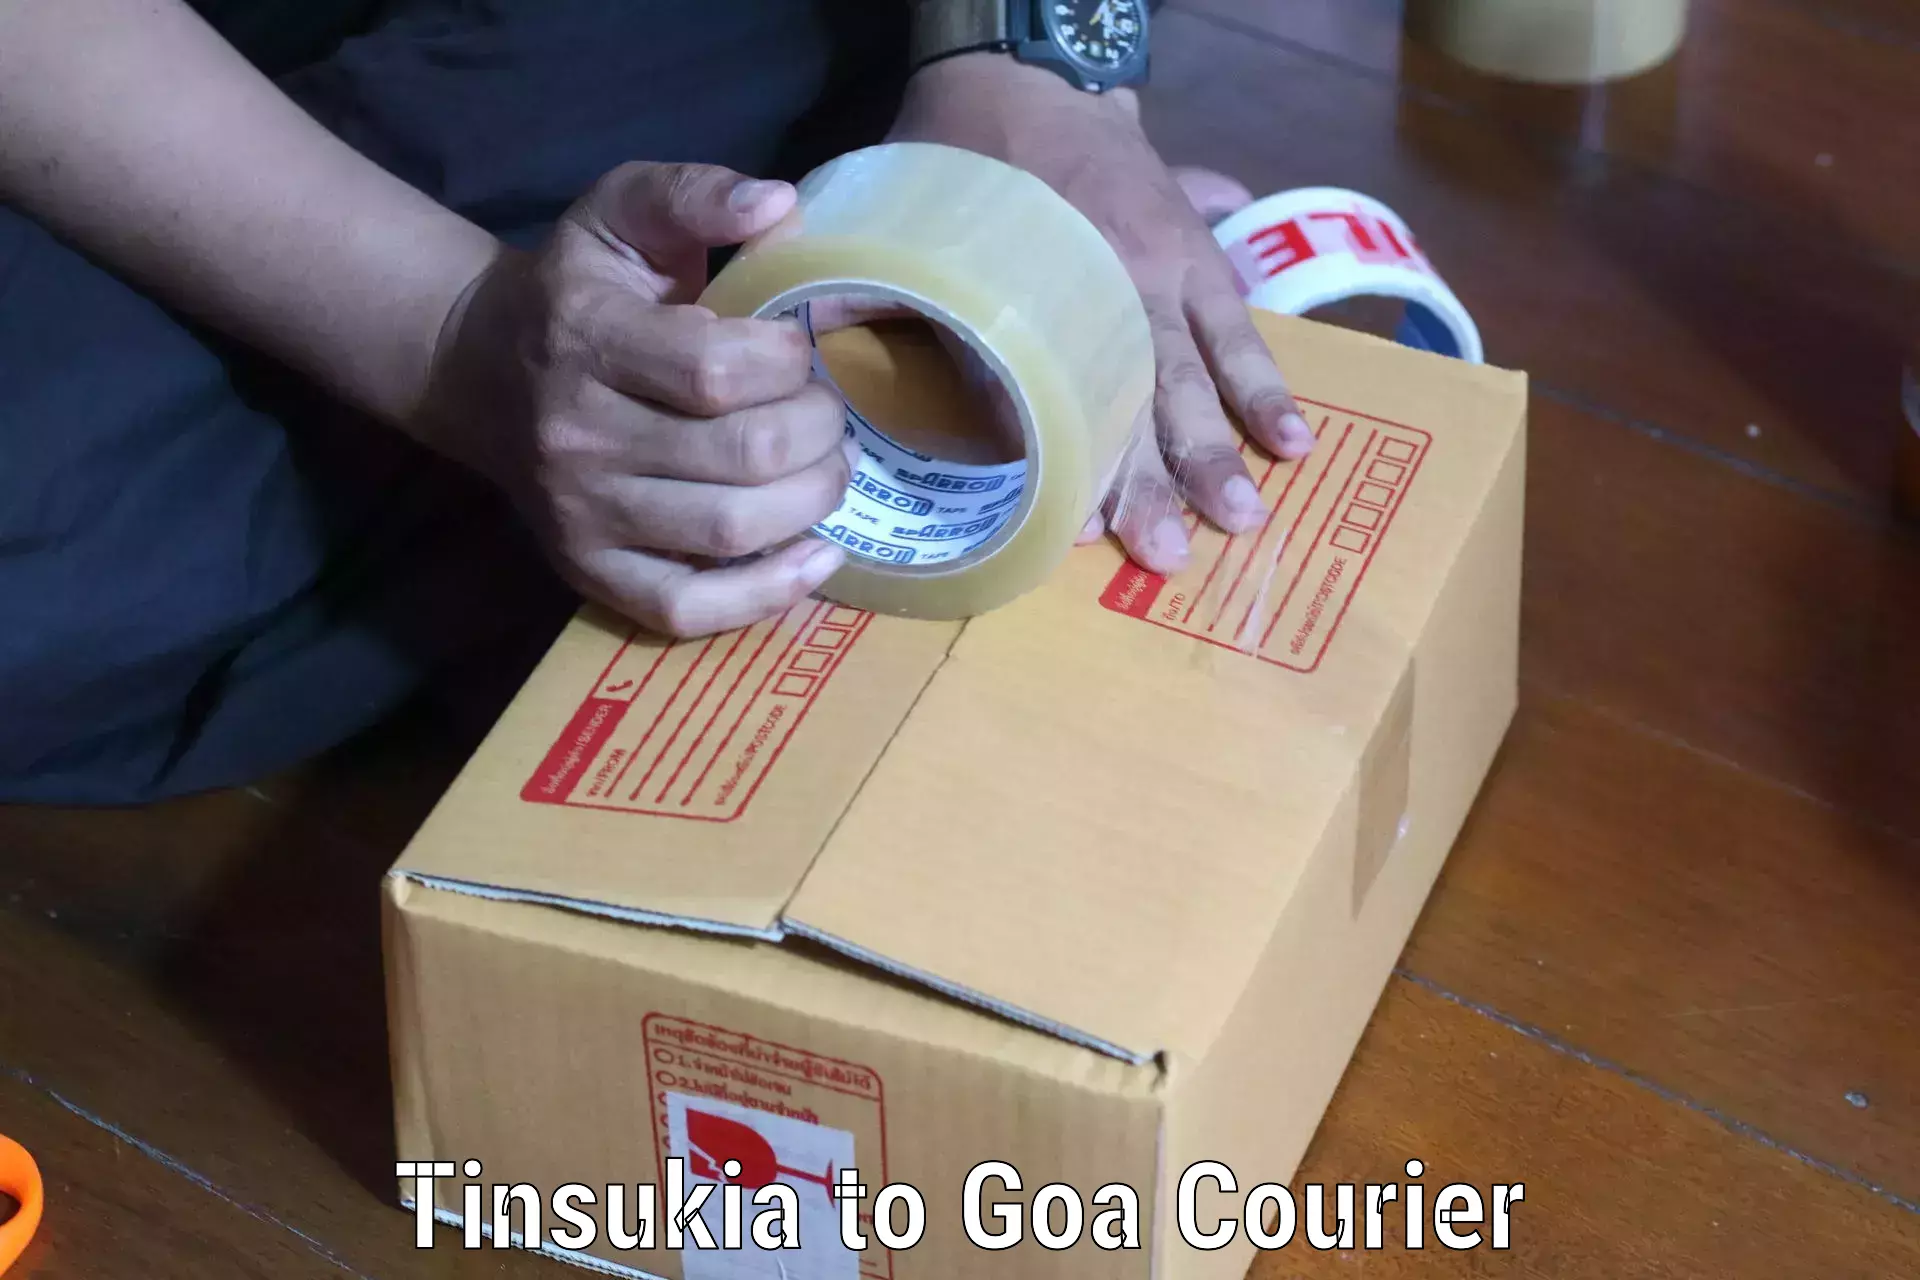 Full-service courier options Tinsukia to Goa